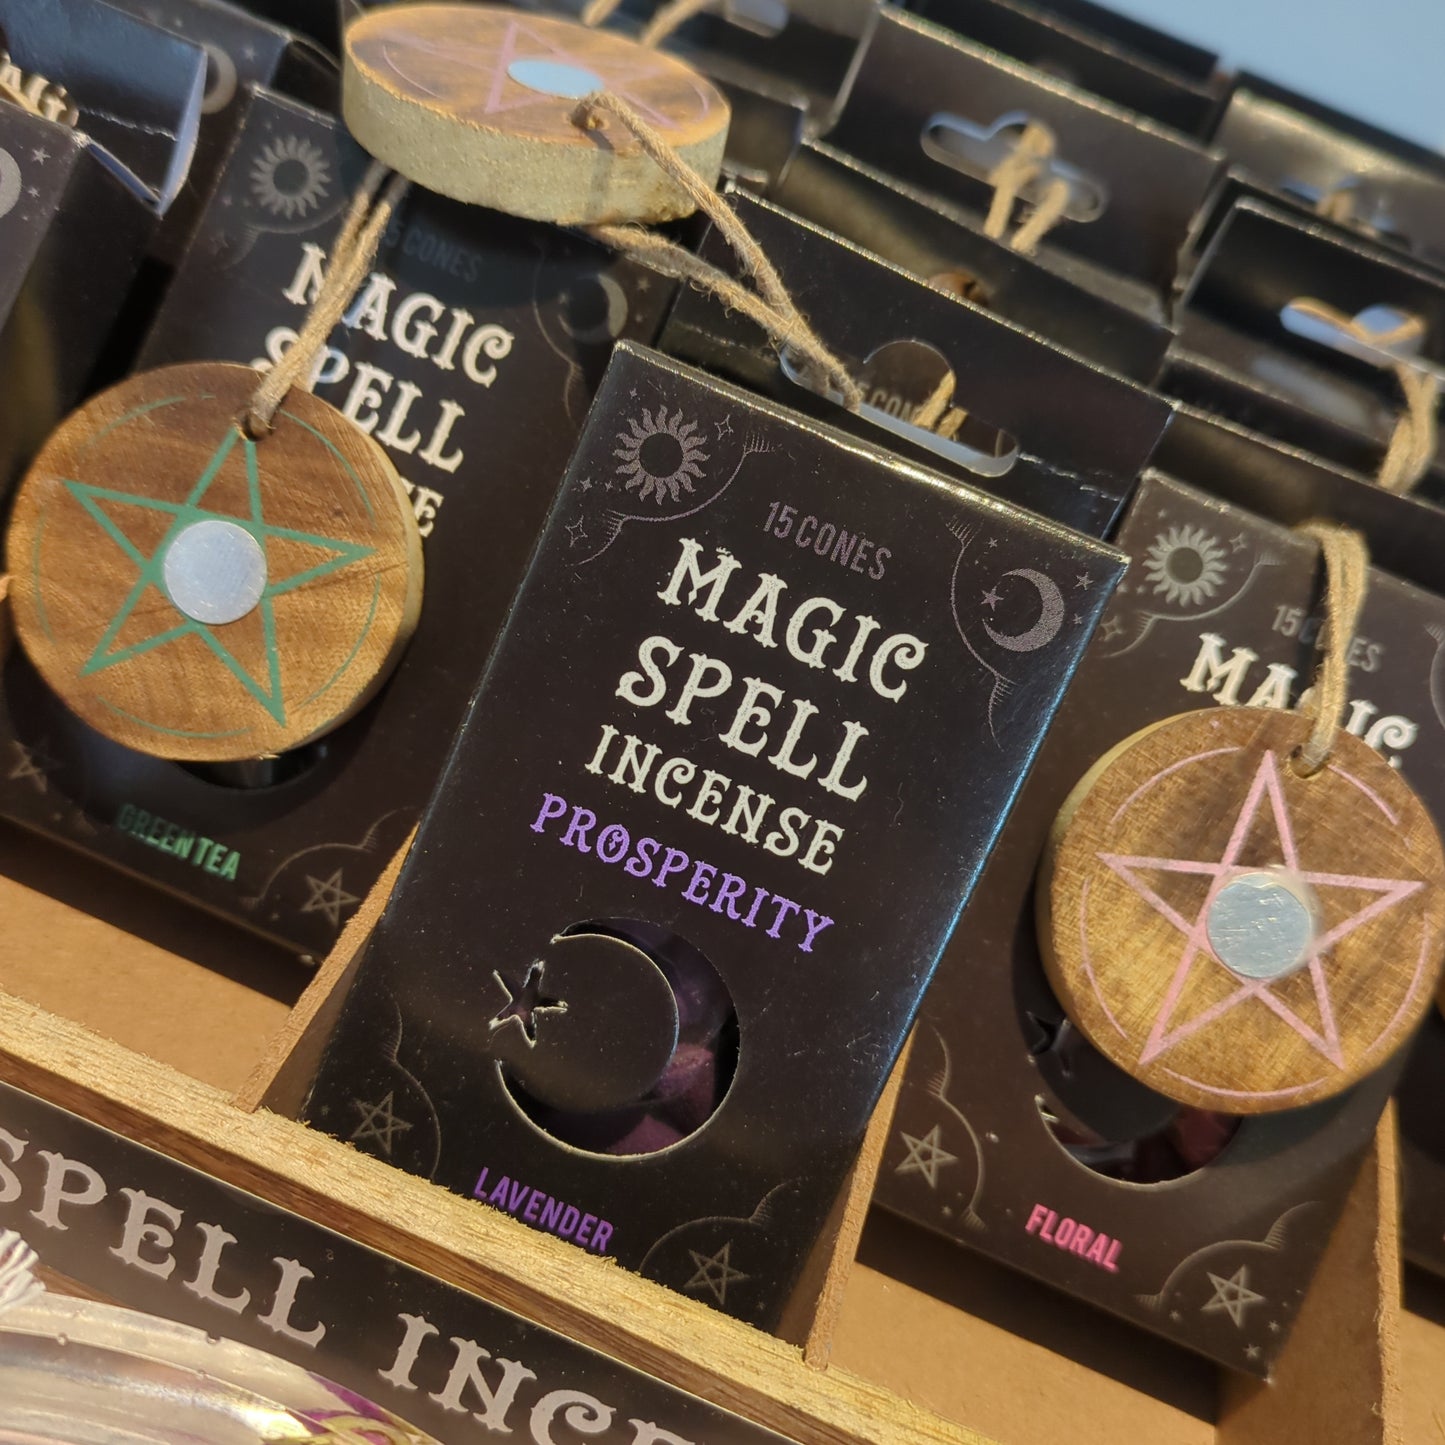 The Magic Spell Incense Cones